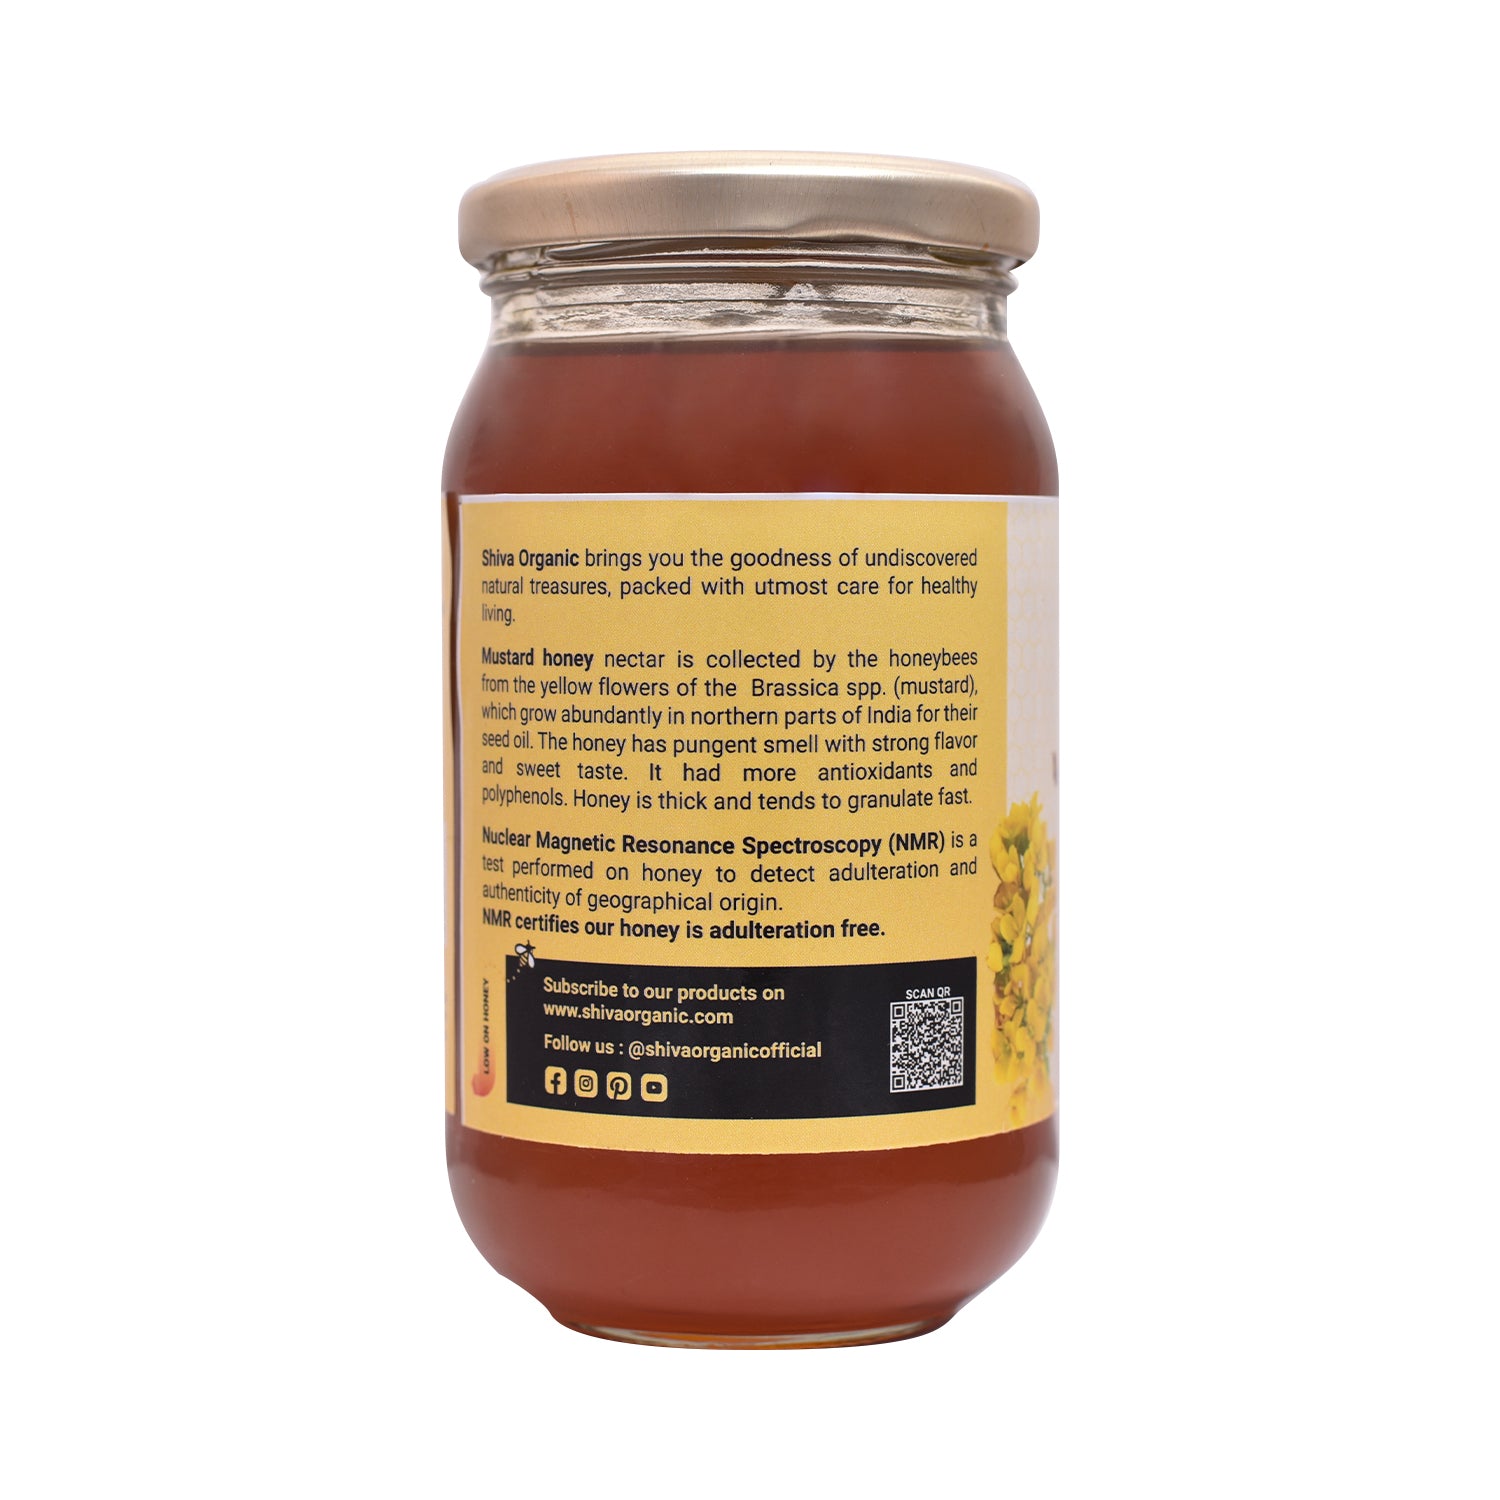 500 gm | Table Honey | White Mustard honey | Shiva Organic